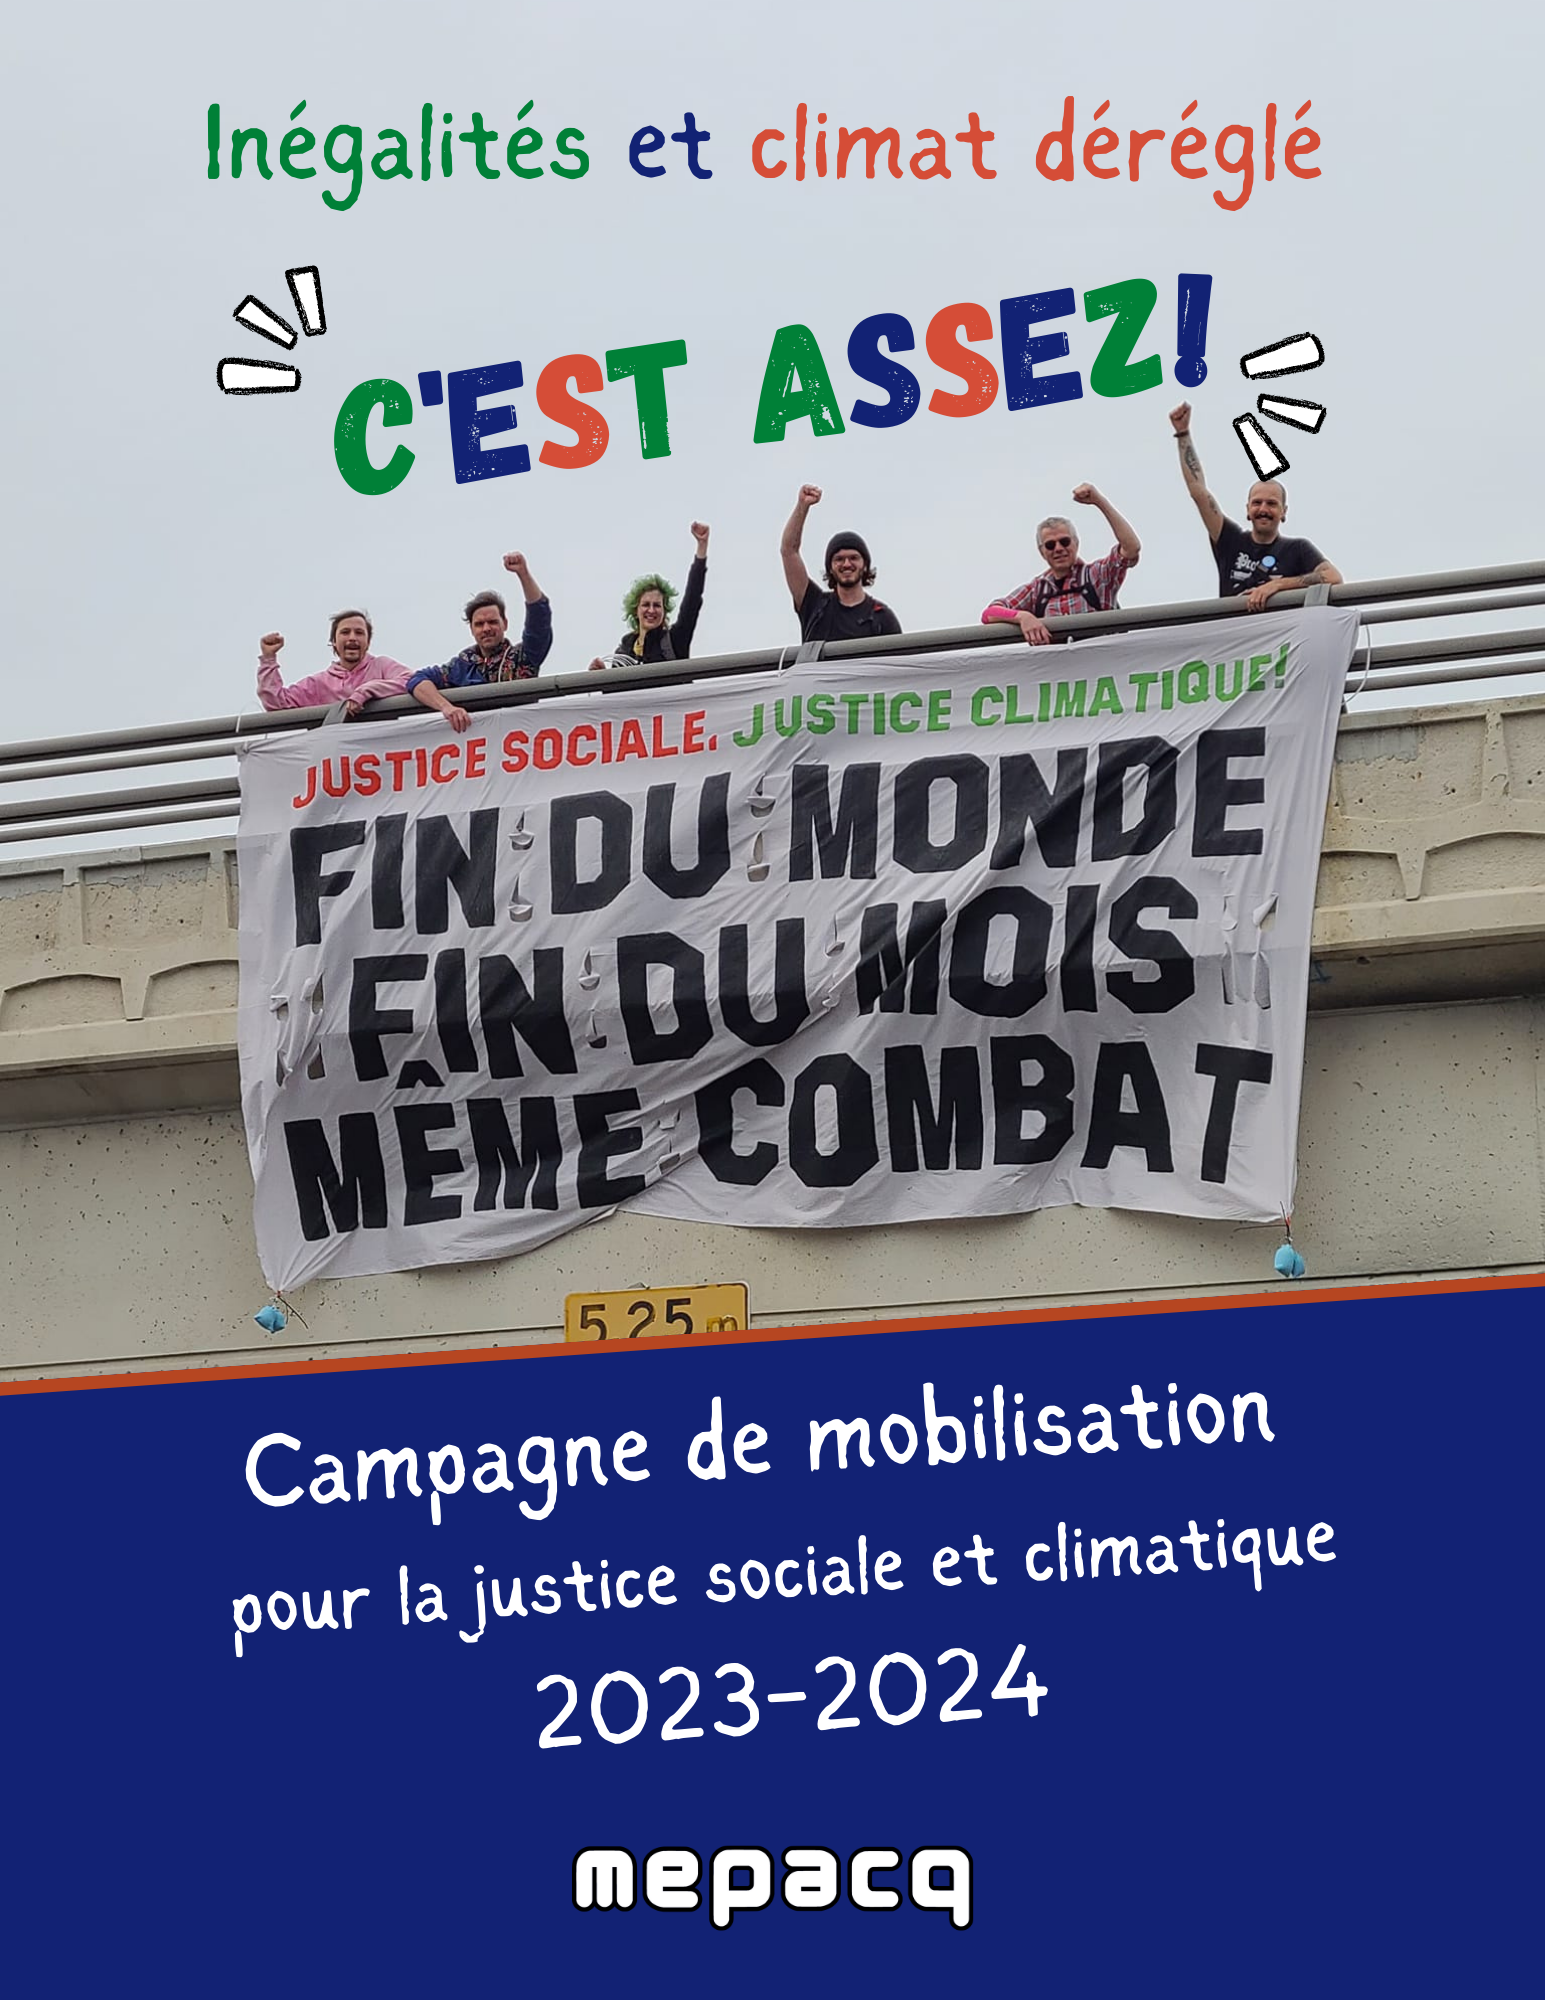 Campagne de mobilisation pour la justice sociale et climatique 2023-2024